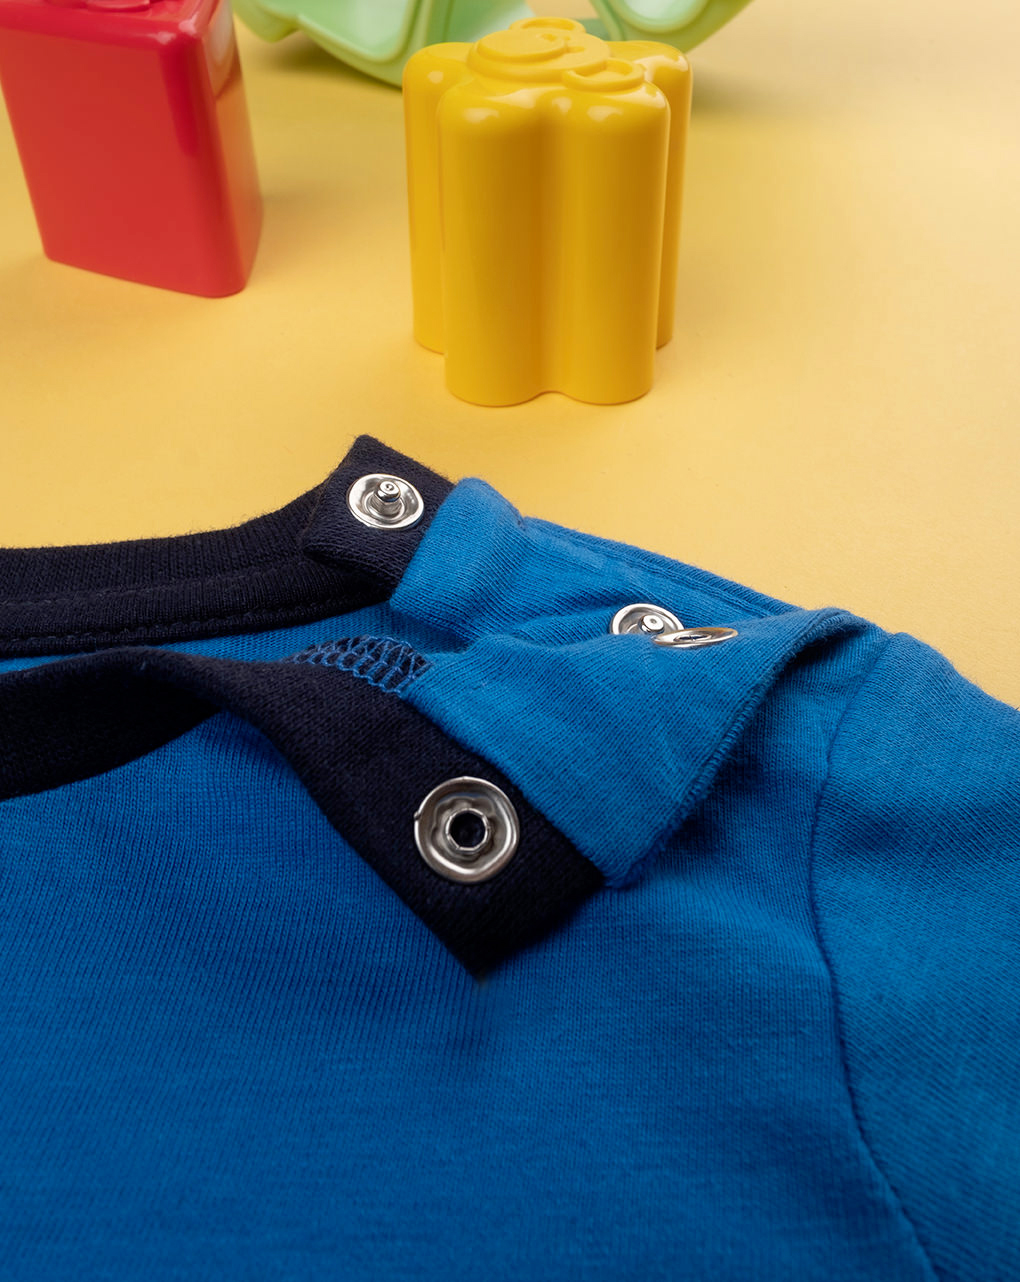 βρεφική μπλούζα μπλε με δεινόσαυρο για αγόρι - Prénatal